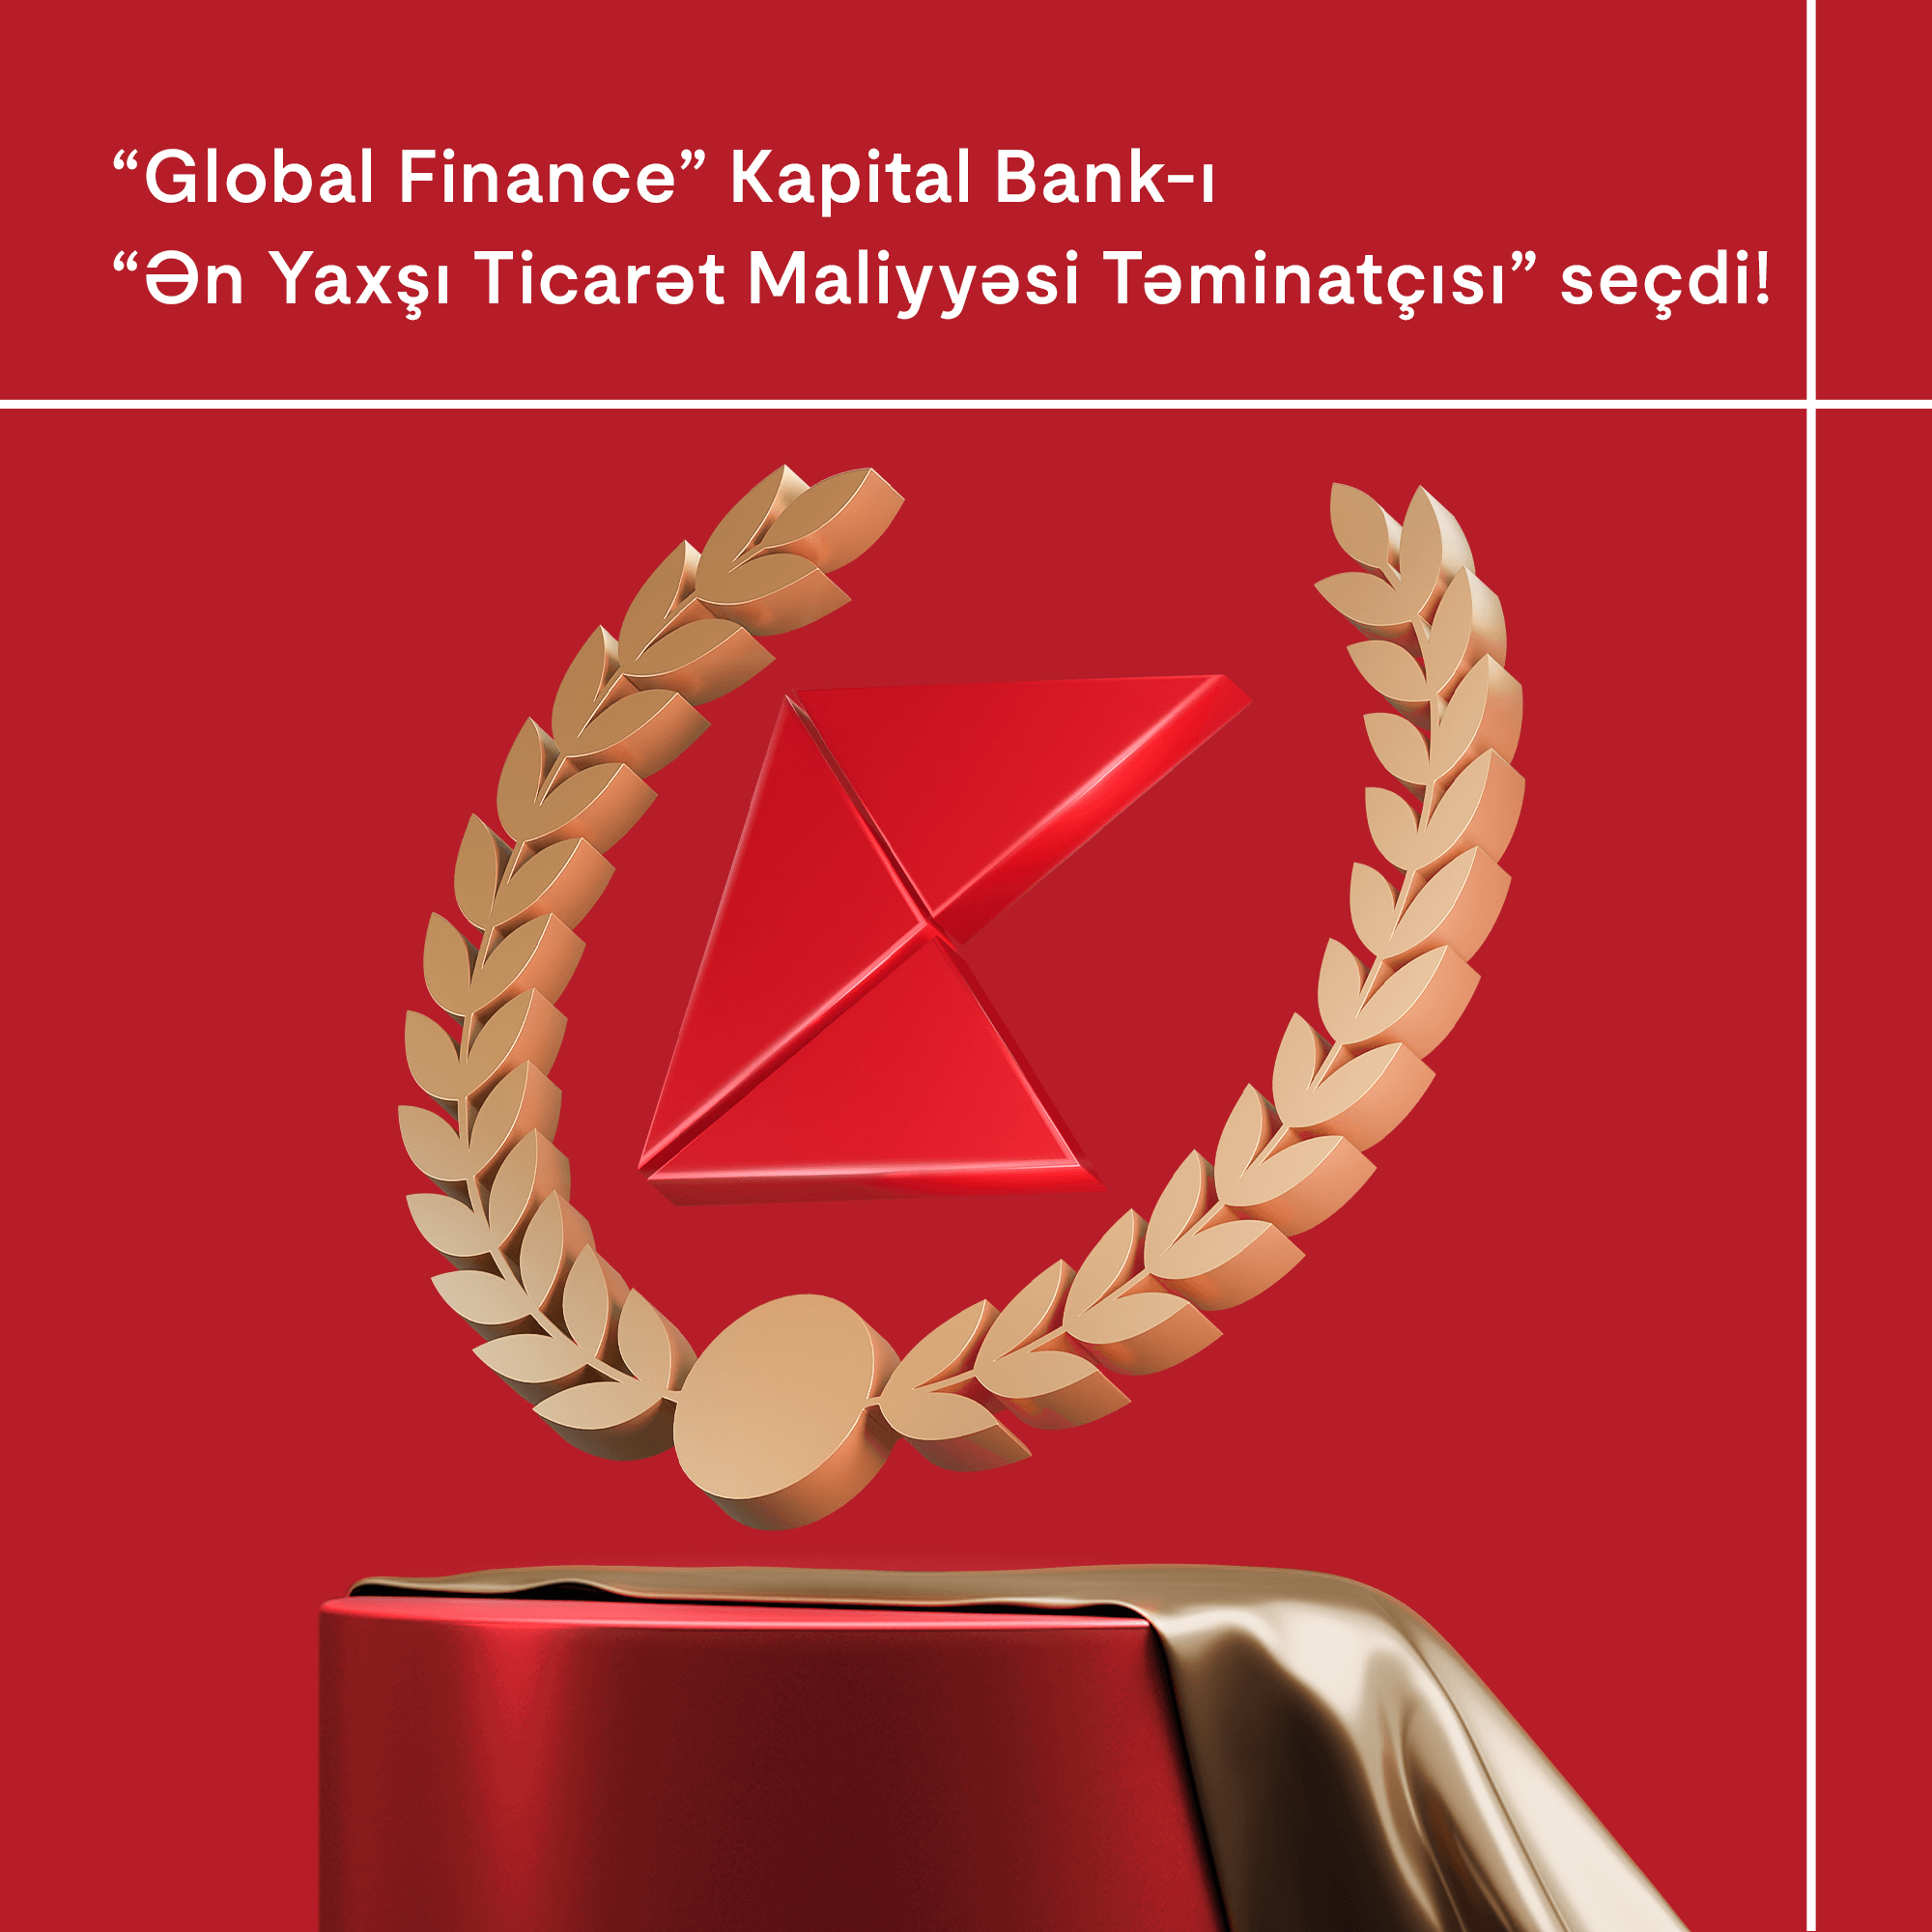 “Global Finance” Kapital Bank-ı mükafatlandırdı